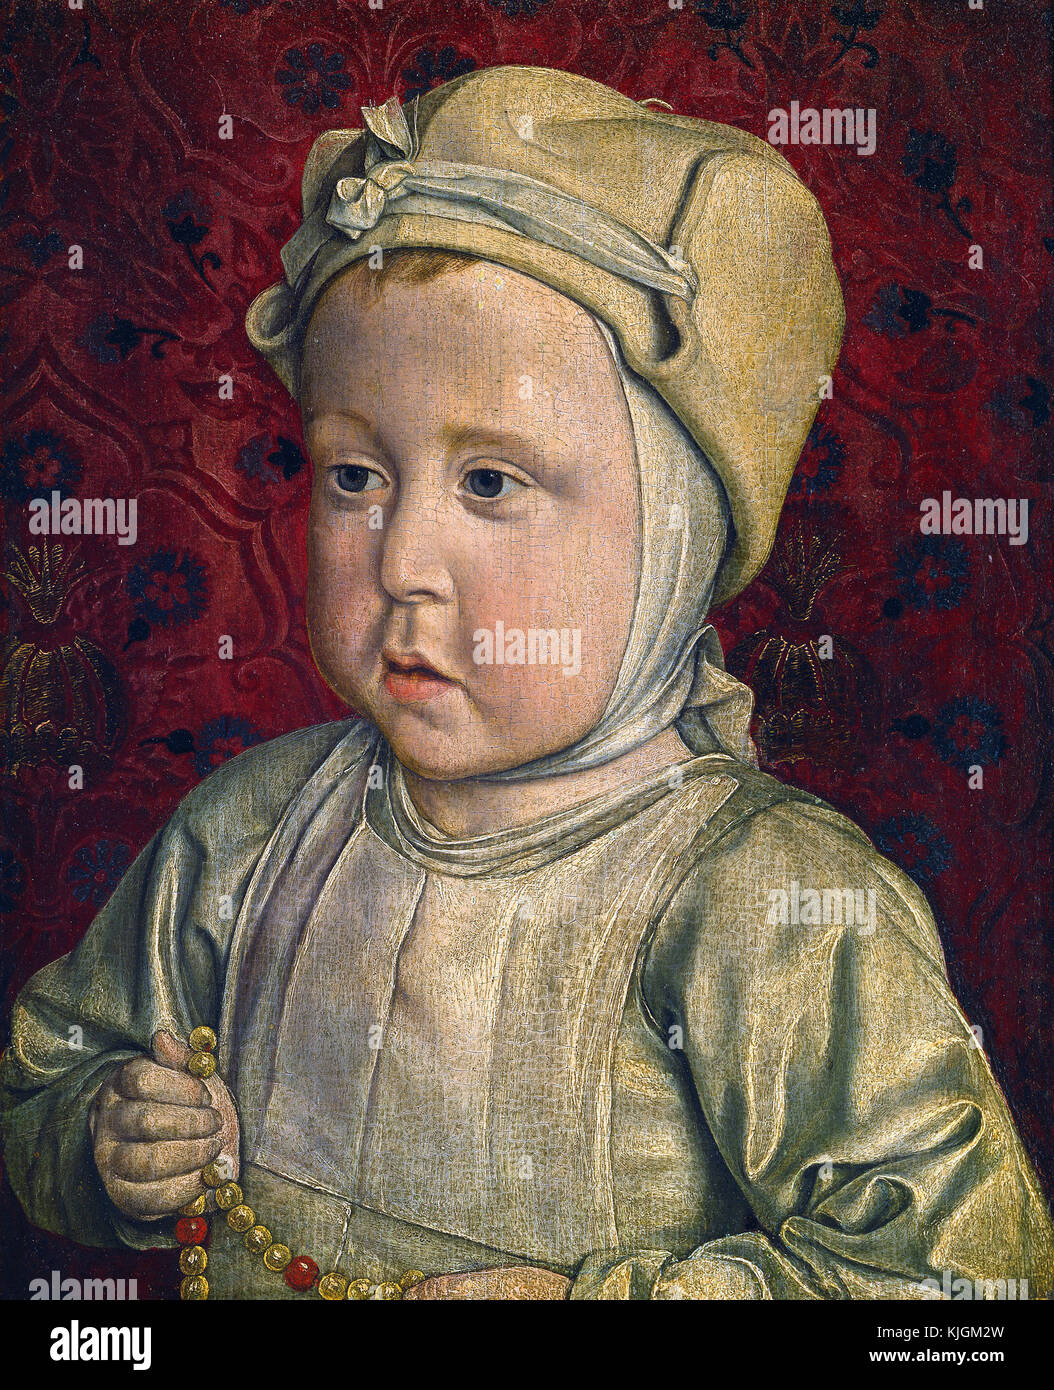 Jean Fouquet, auch bekannt als der Meister von Moulins - Porträt des Dauphin Karl Orlant Sohn von Charles VIII. und Anne de Bretagne Paris, Louvre Museum 1494 Stockfoto